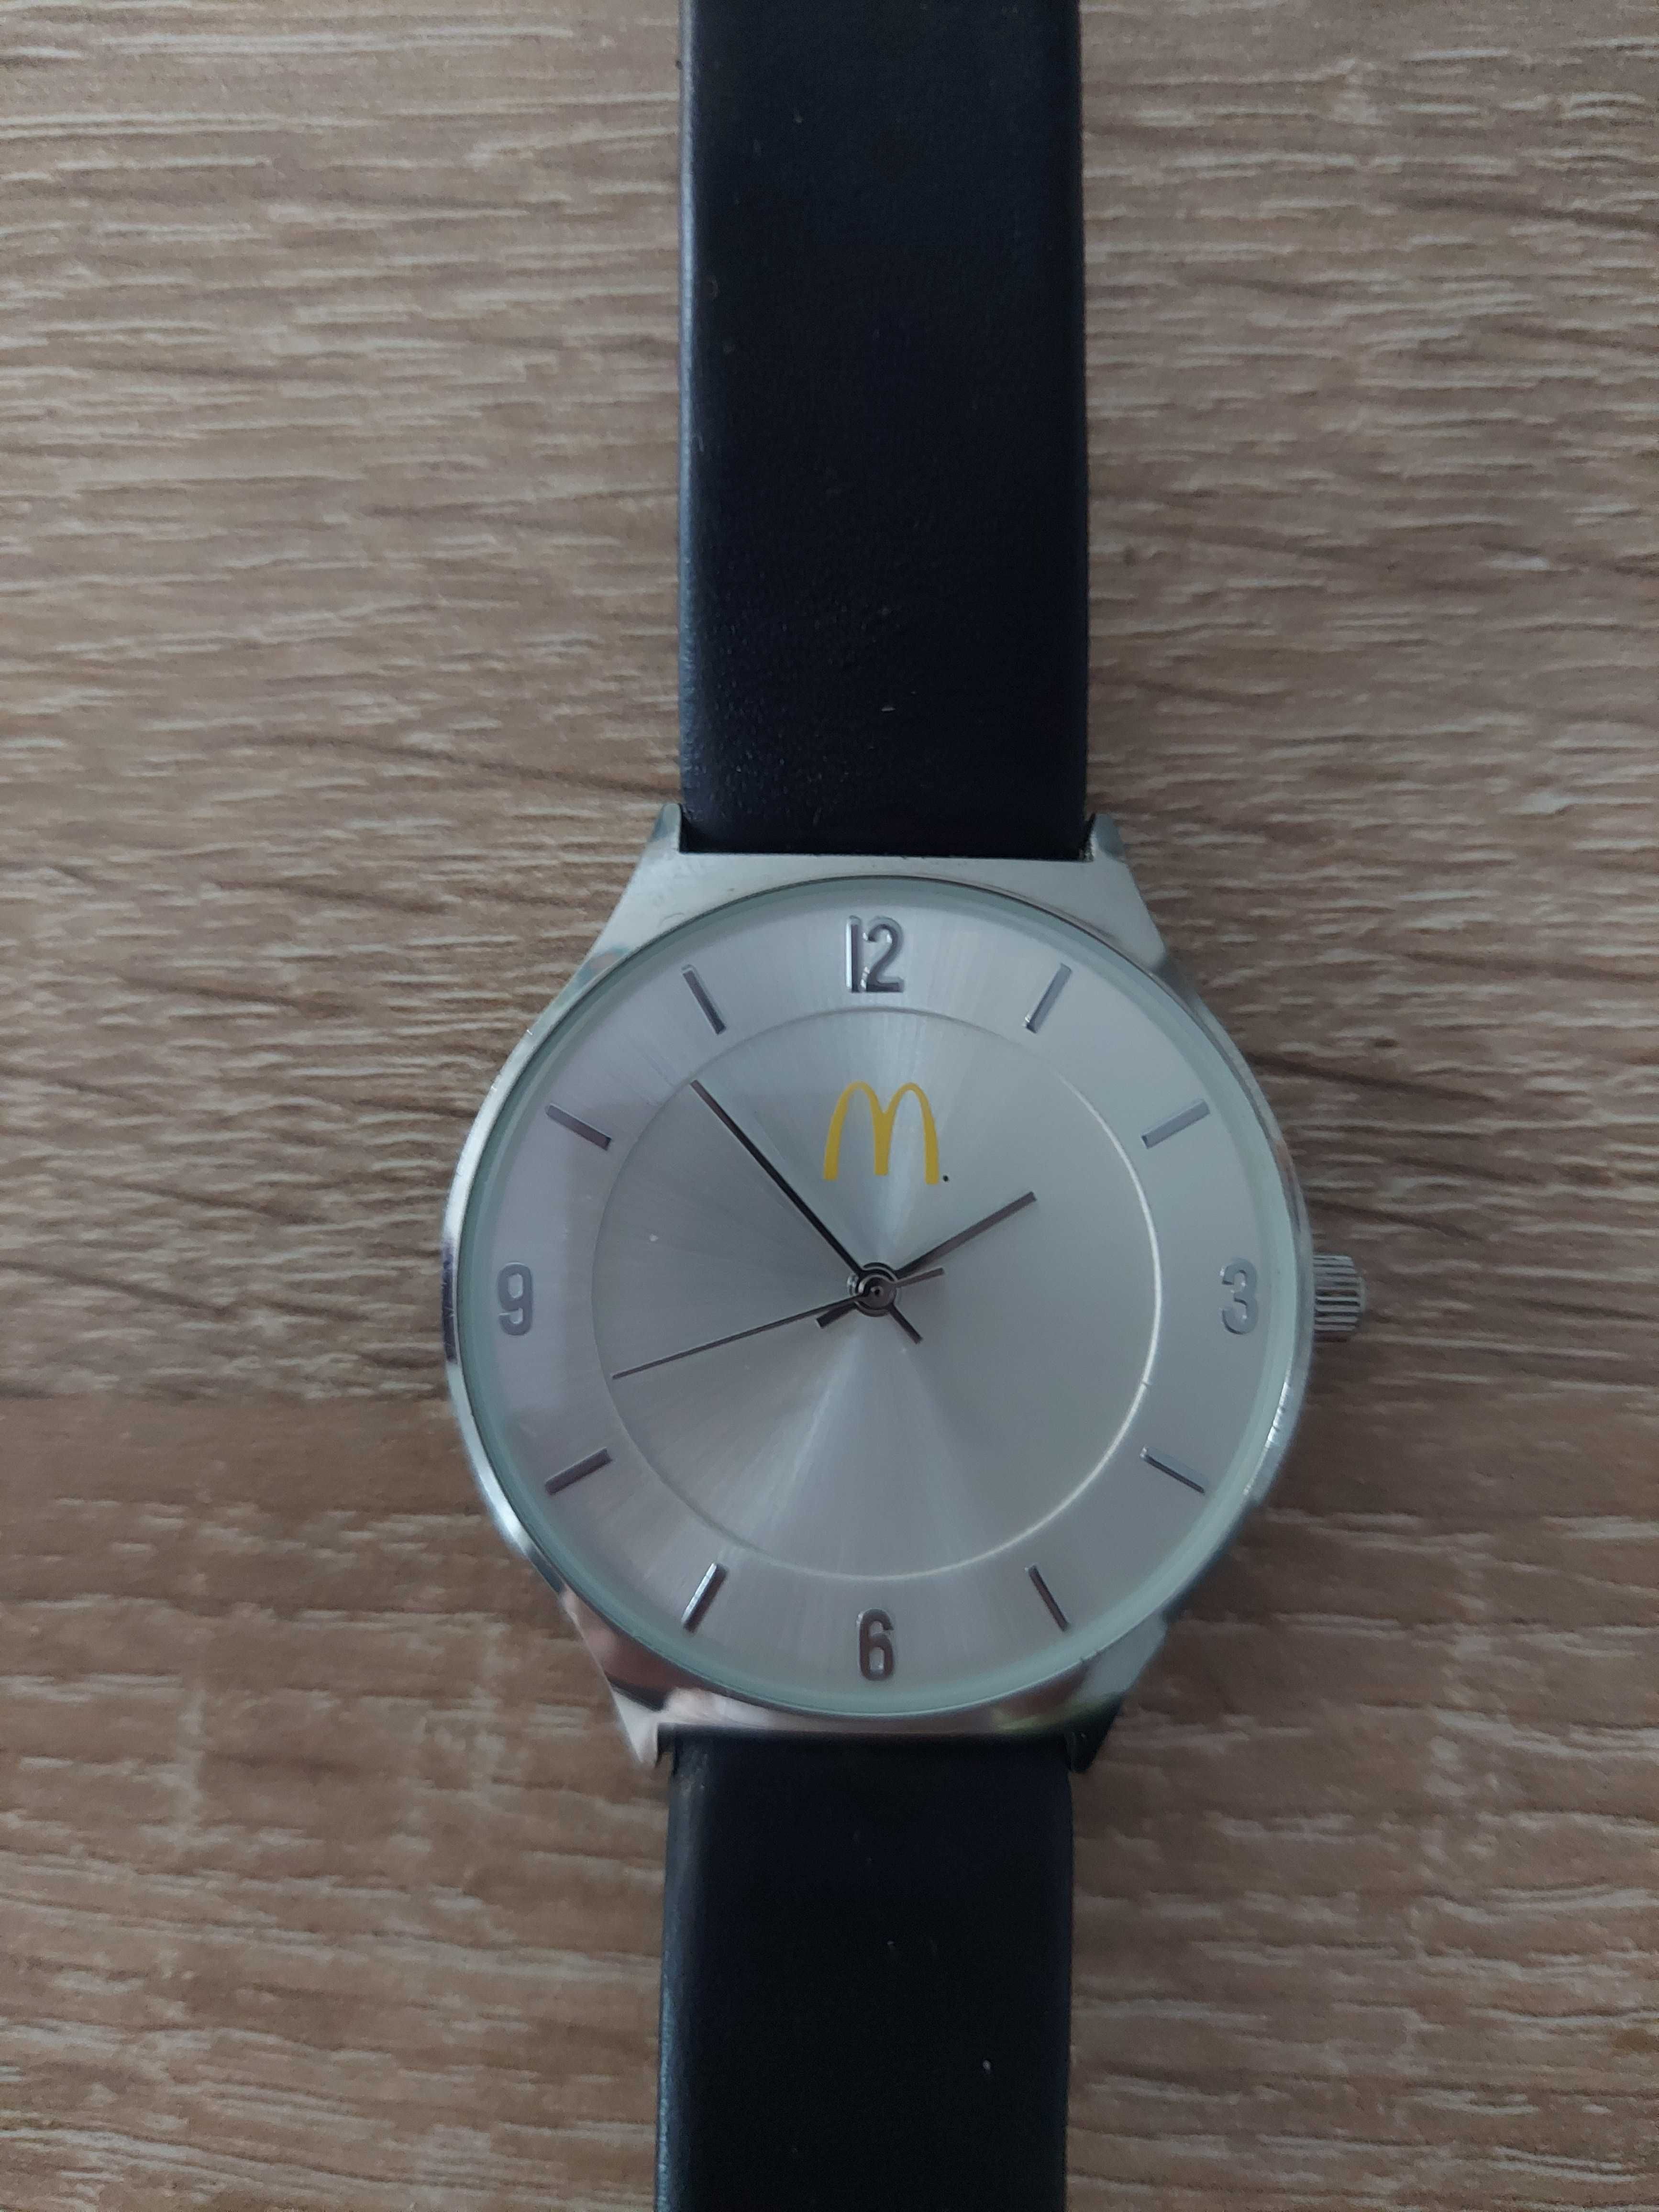 Наручний годинник, брендований "McDonald's"